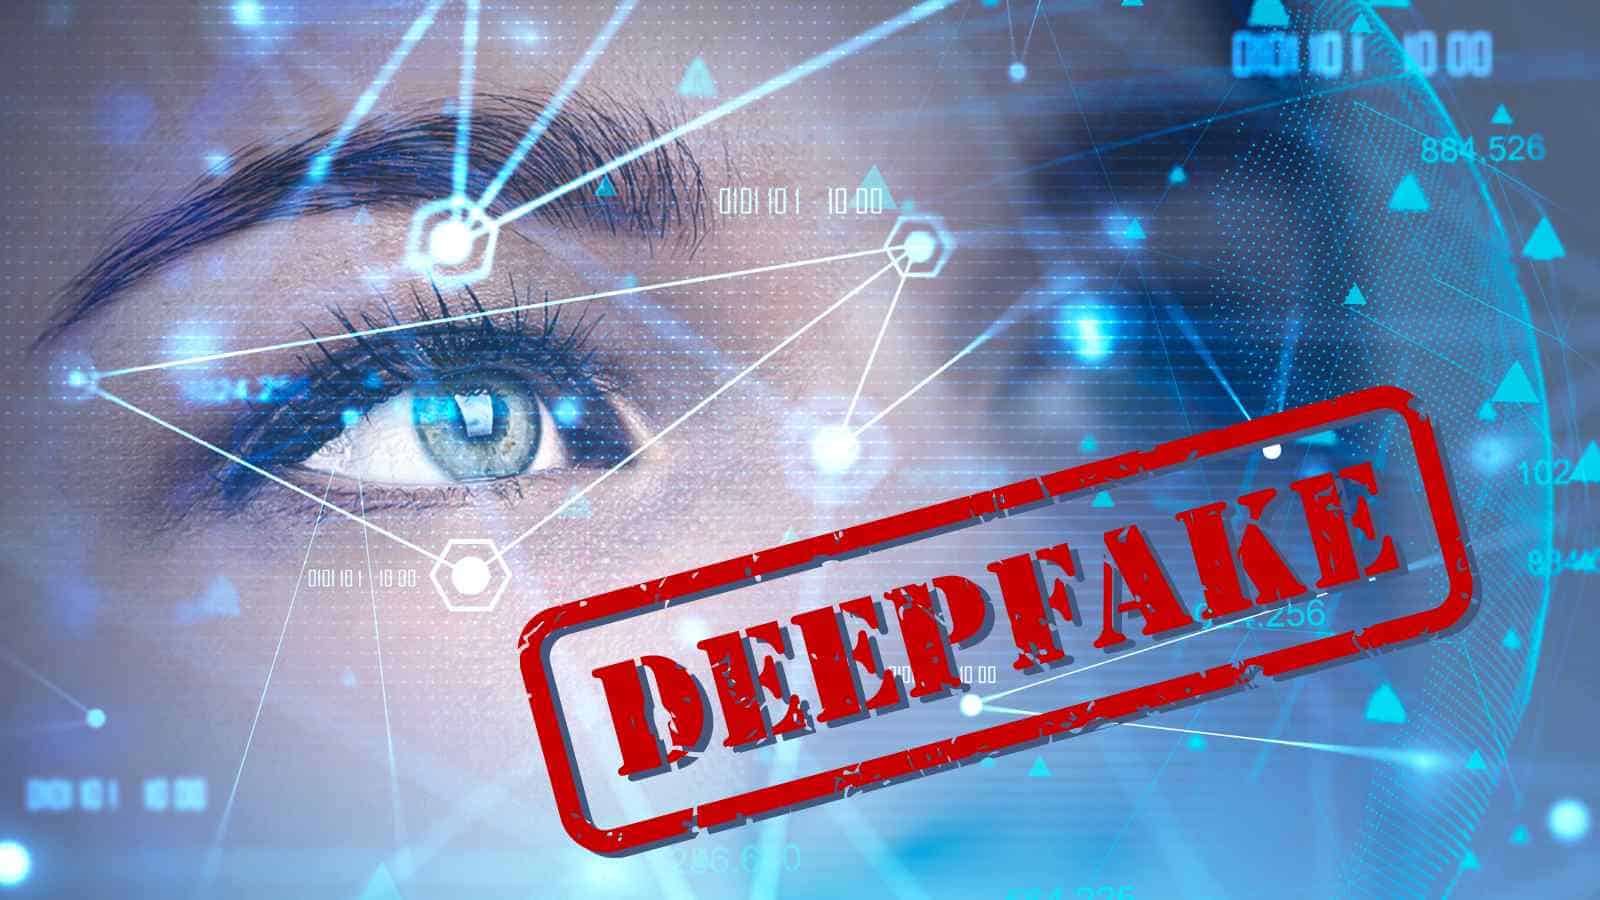 Il deepfake a sfondo sessuale è finalmente punibile dalla legge, almeno nel Regno Unito